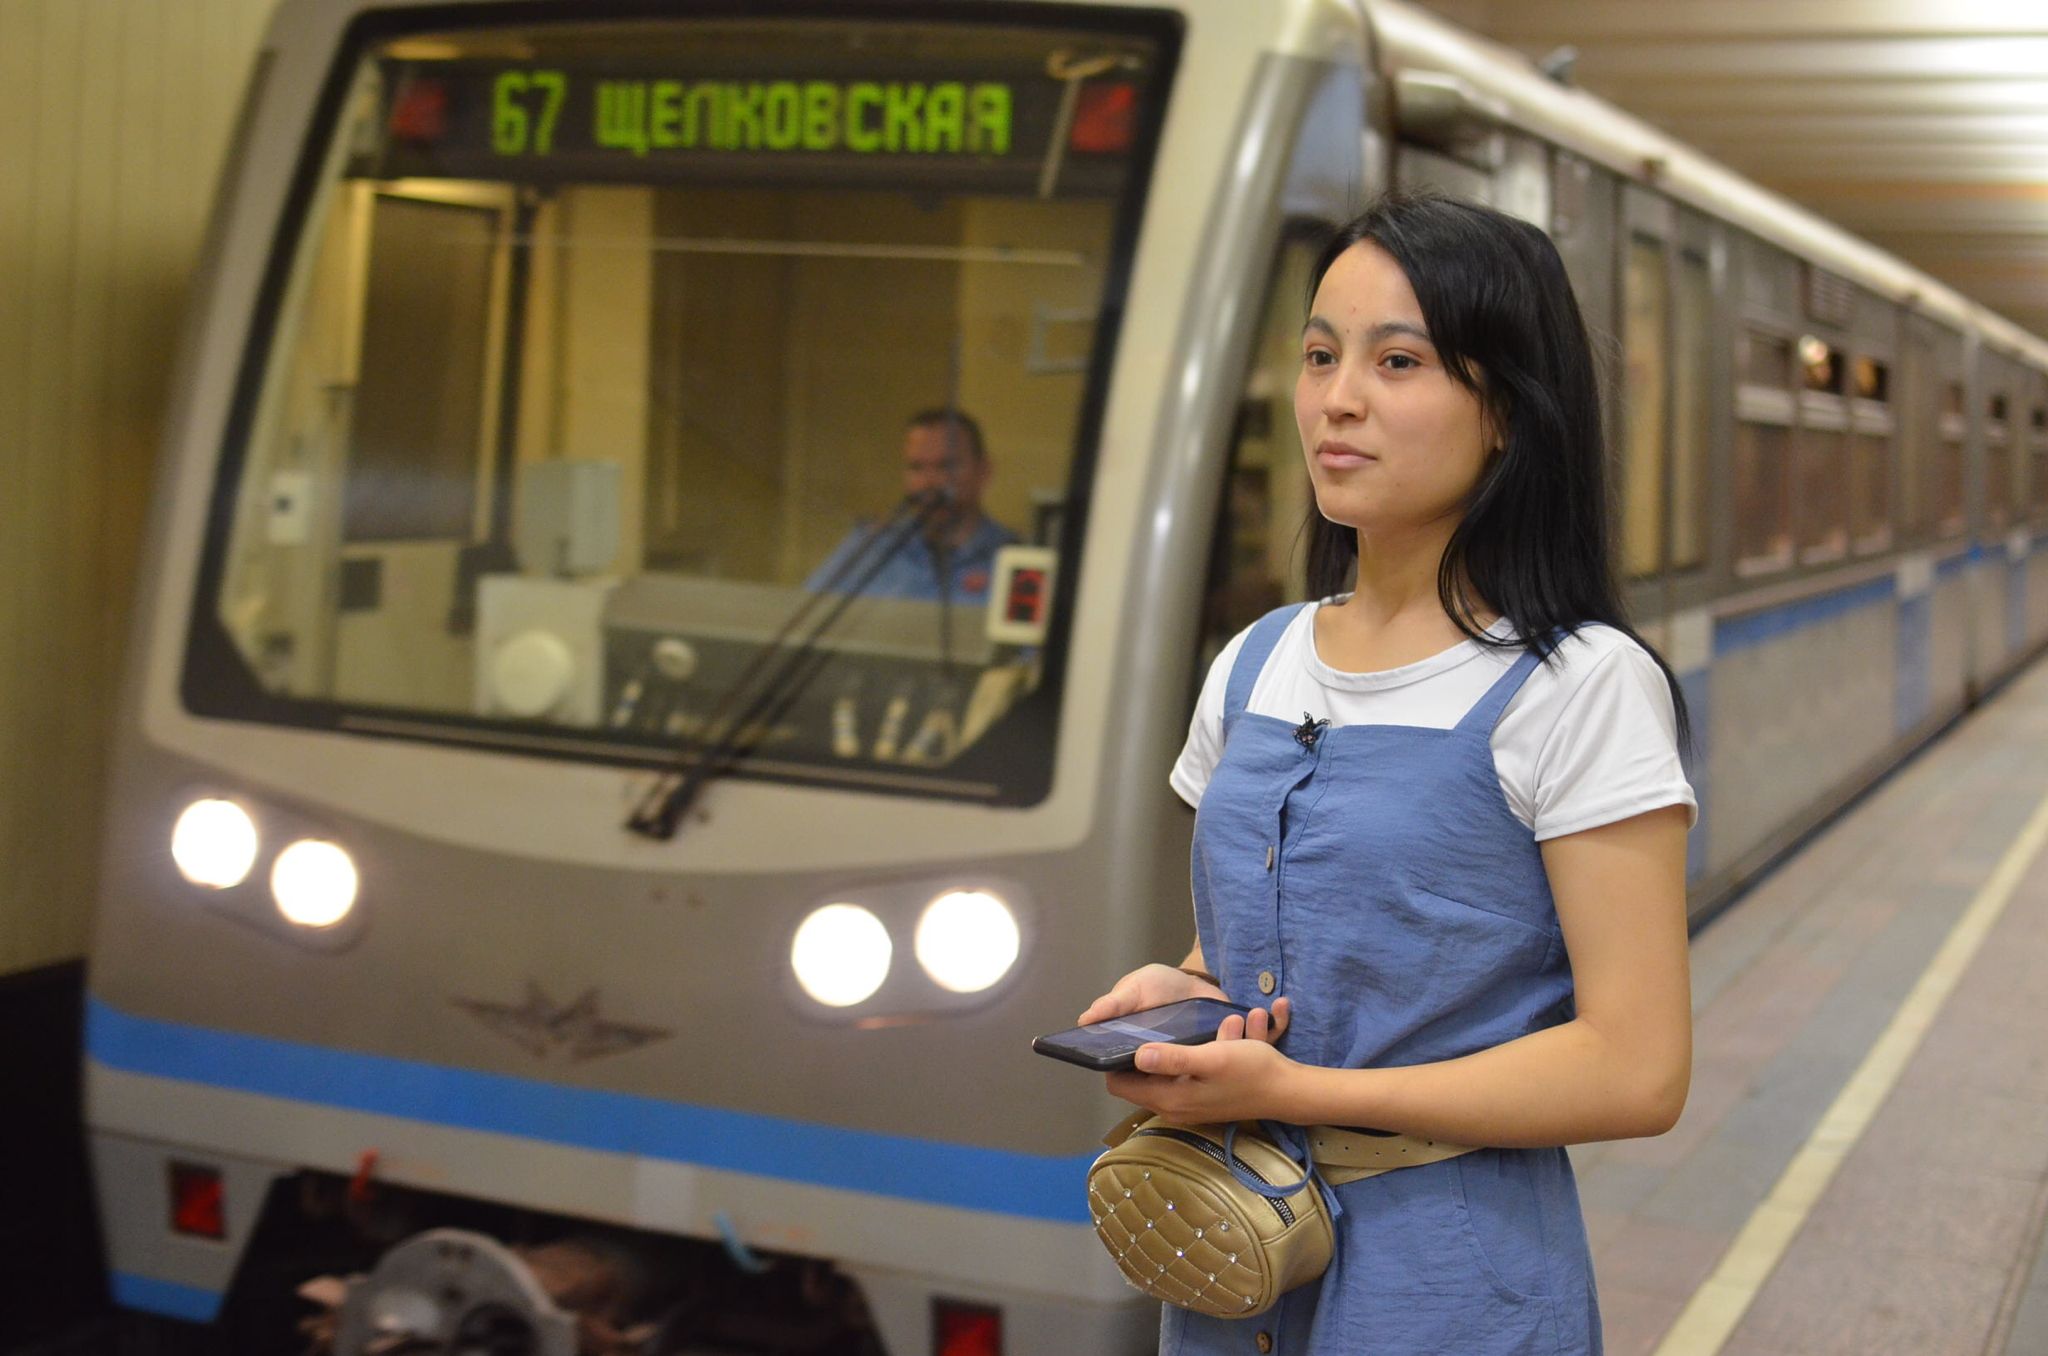 Закрытый Wi-Fi с защитой от кибератак появился в московском метро